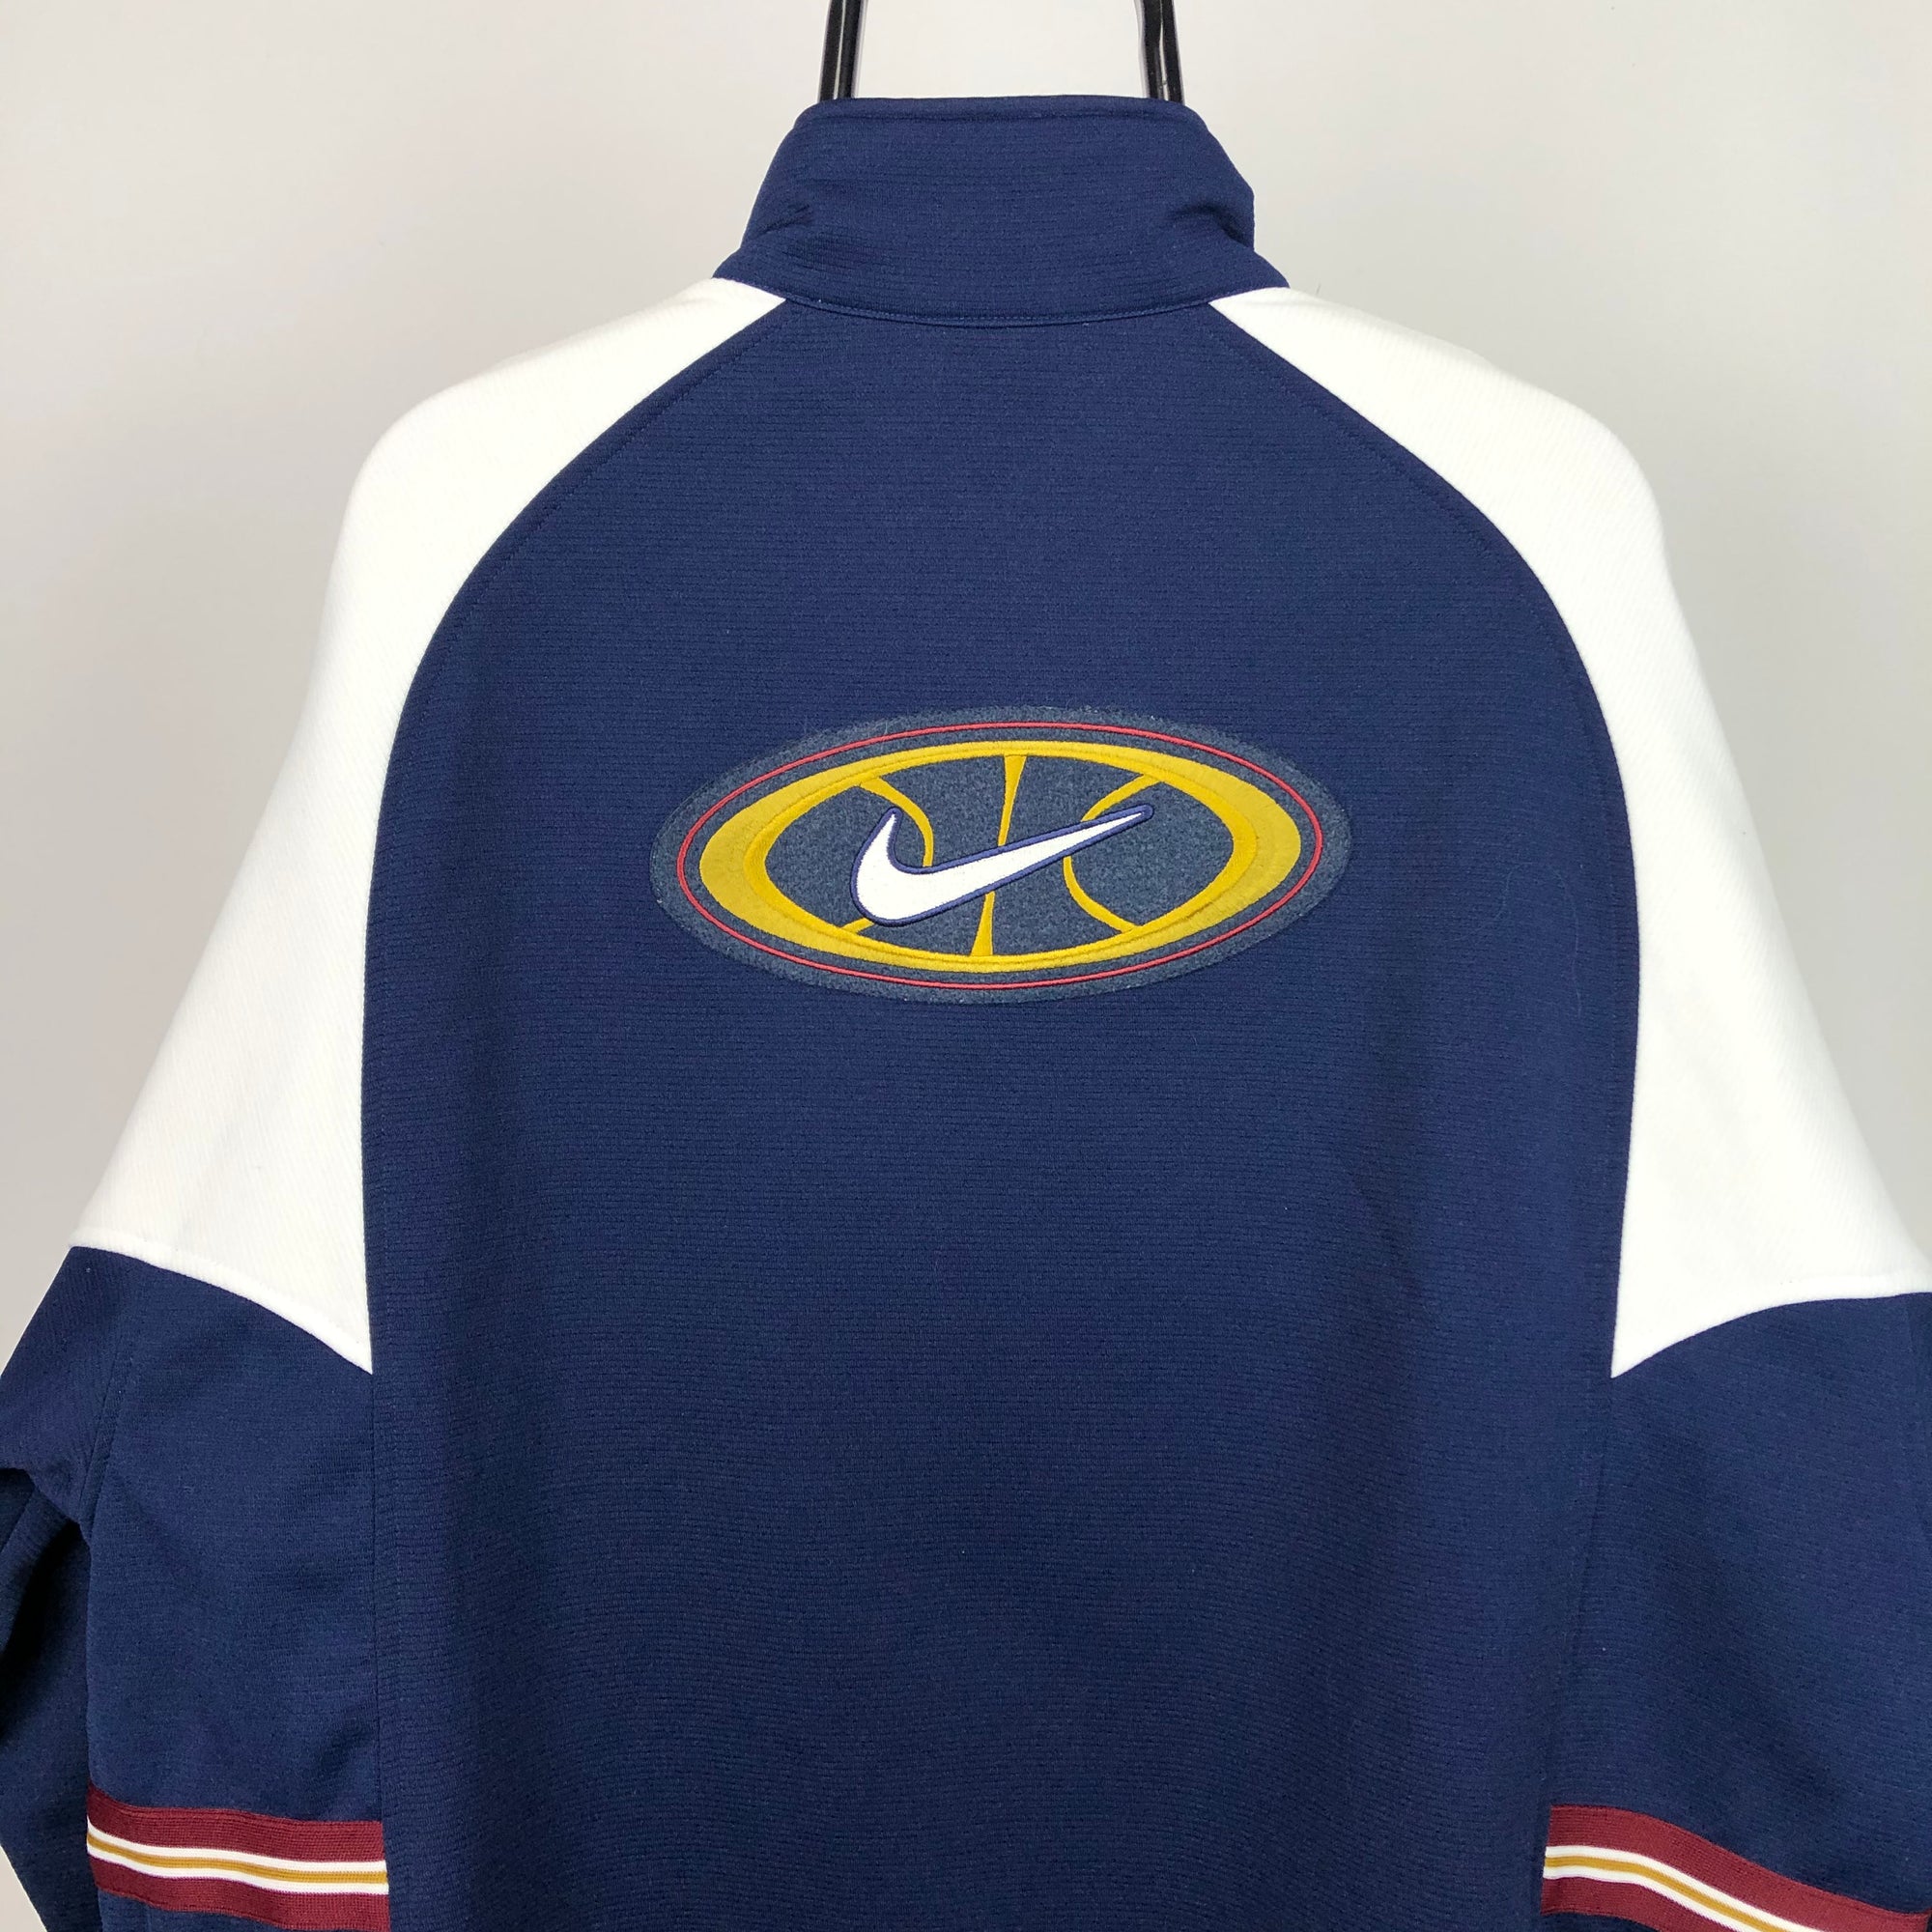 Vintage 90s Nike Varsity Track Jacket - Men's XXL/Women's XXXL